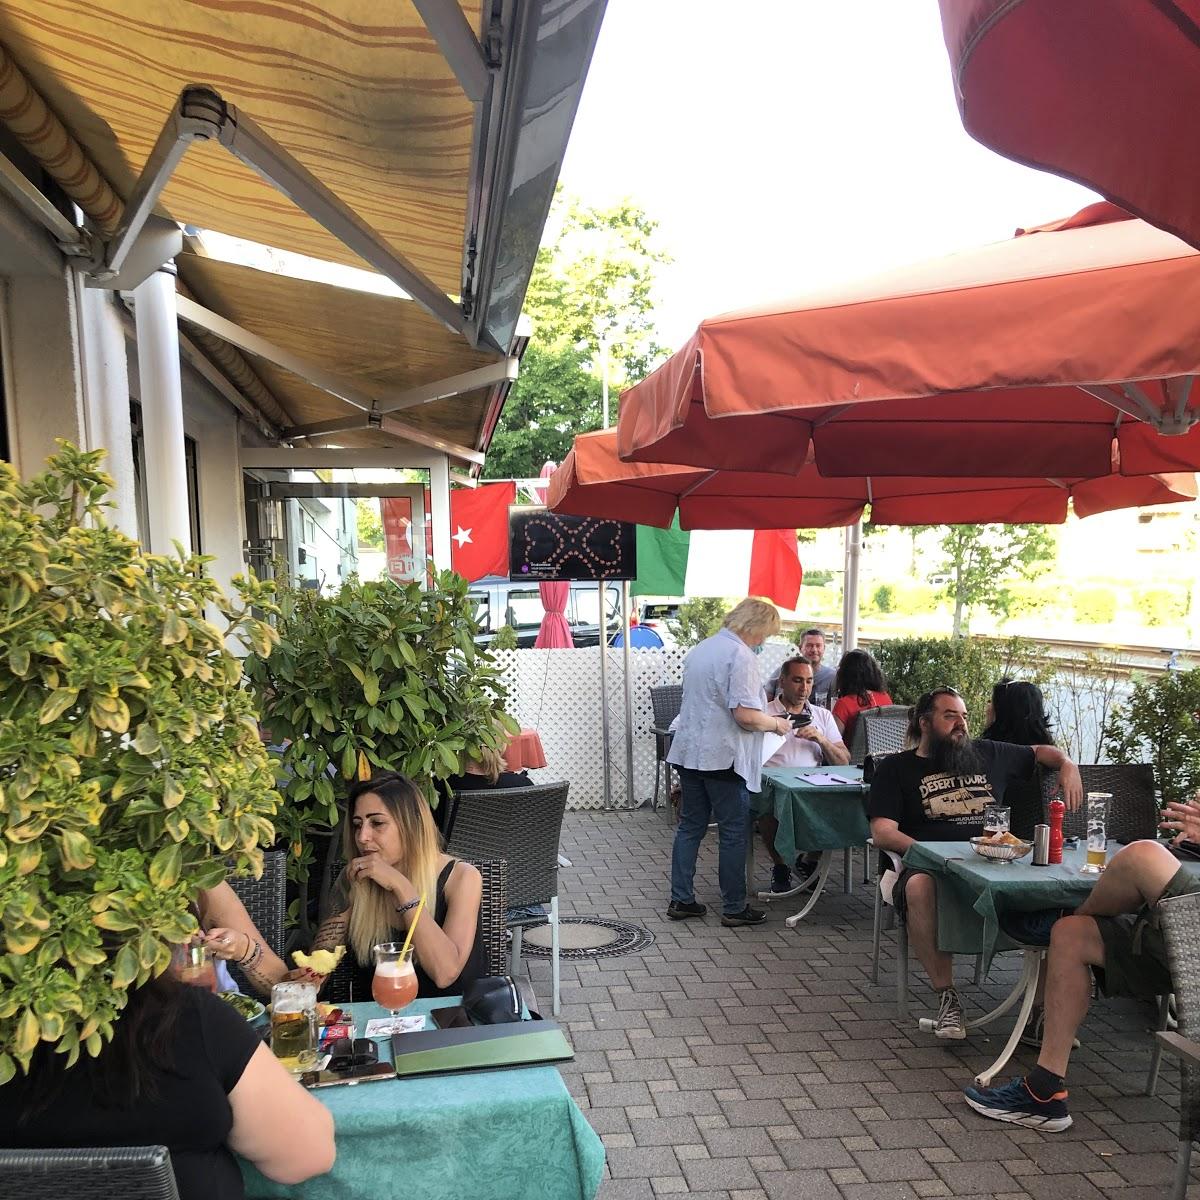 Restaurant "Bistro Pasha" in Griesheim